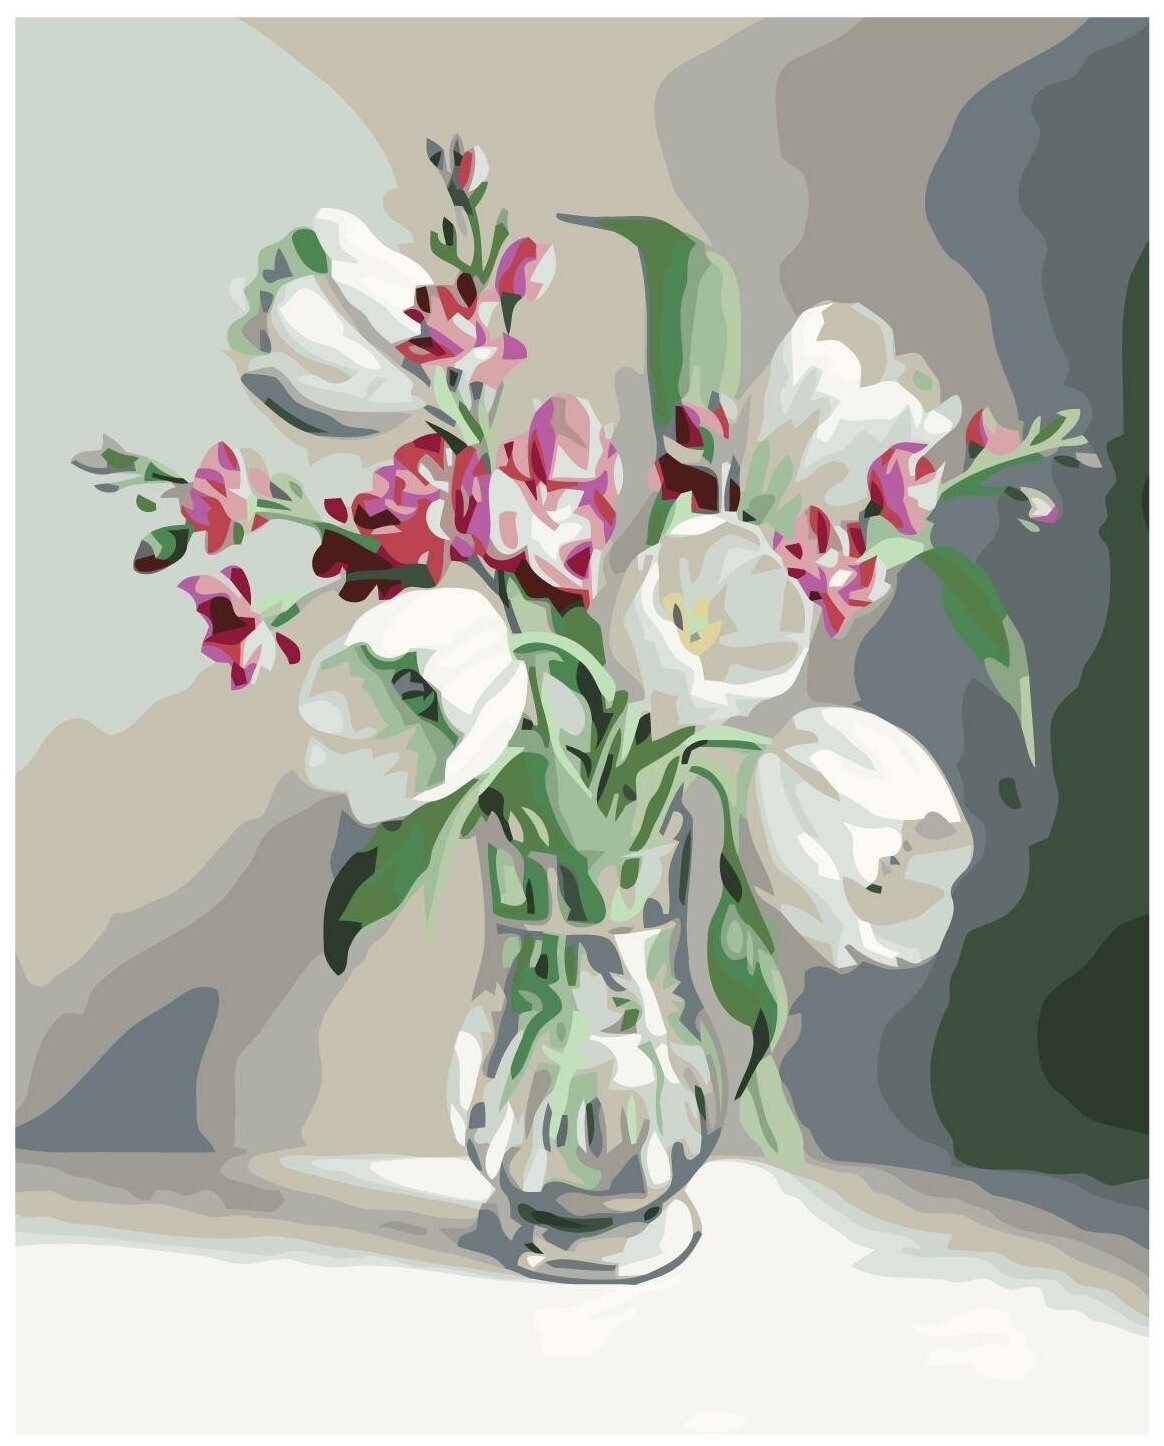 Белые тюльпаны Раскраска по номерам на холсте Живопись по номерам